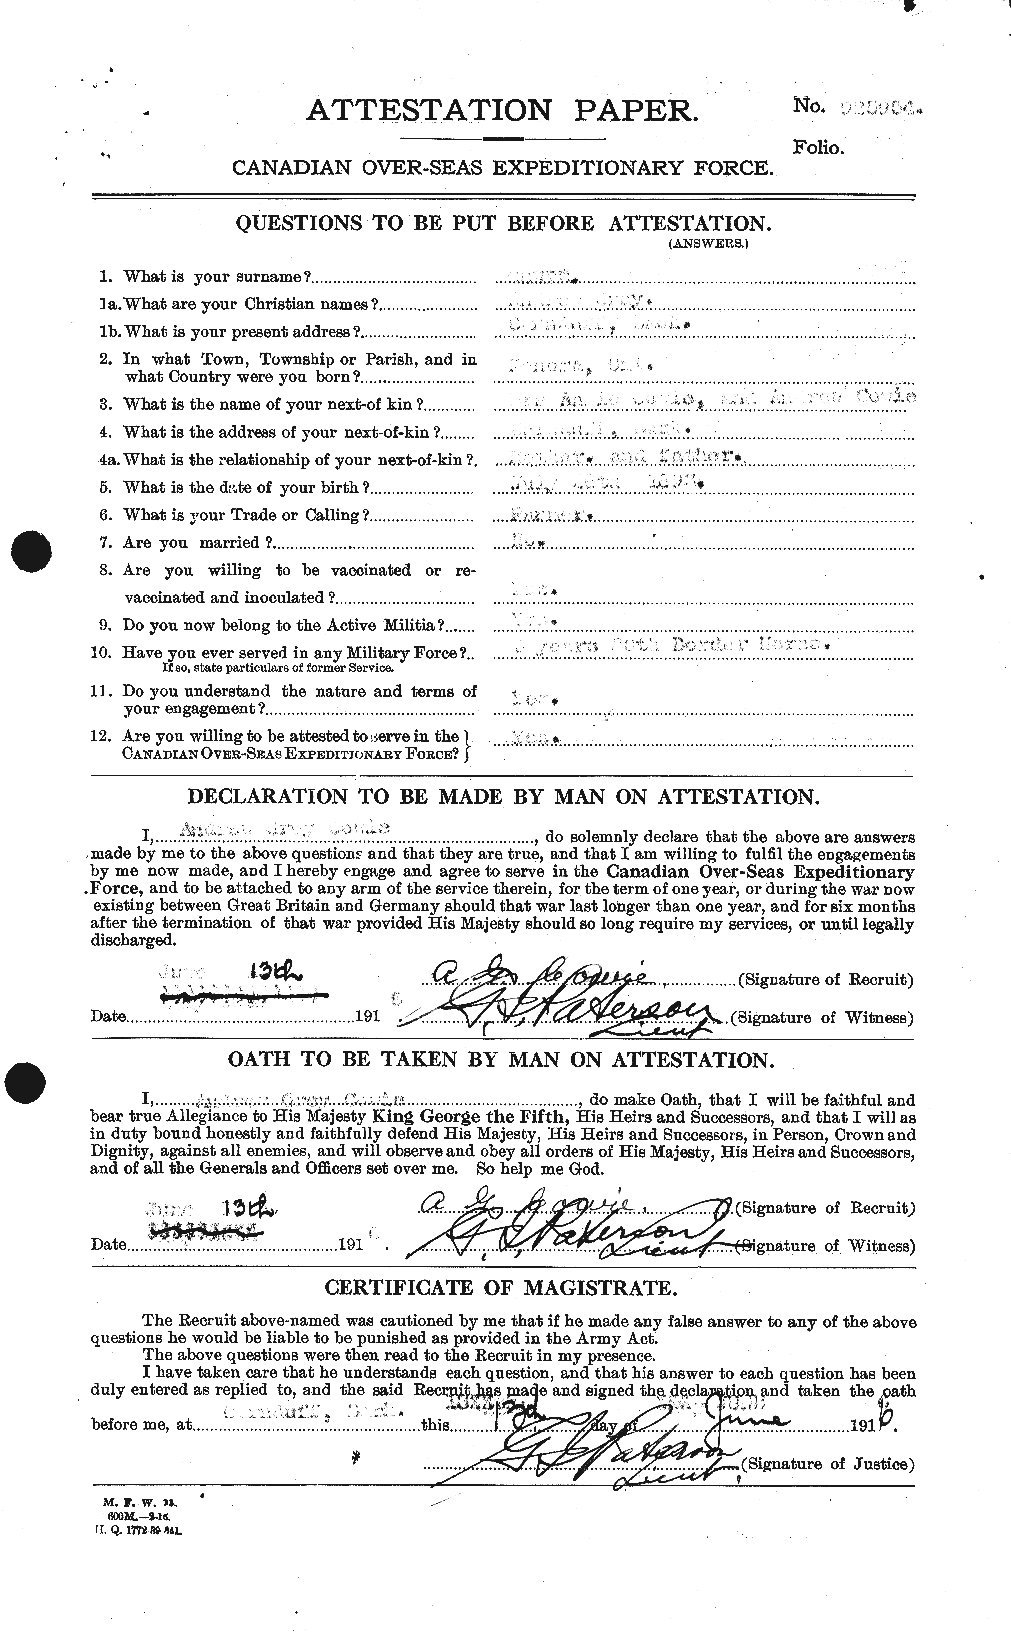 Dossiers du Personnel de la Première Guerre mondiale - CEC 060035a